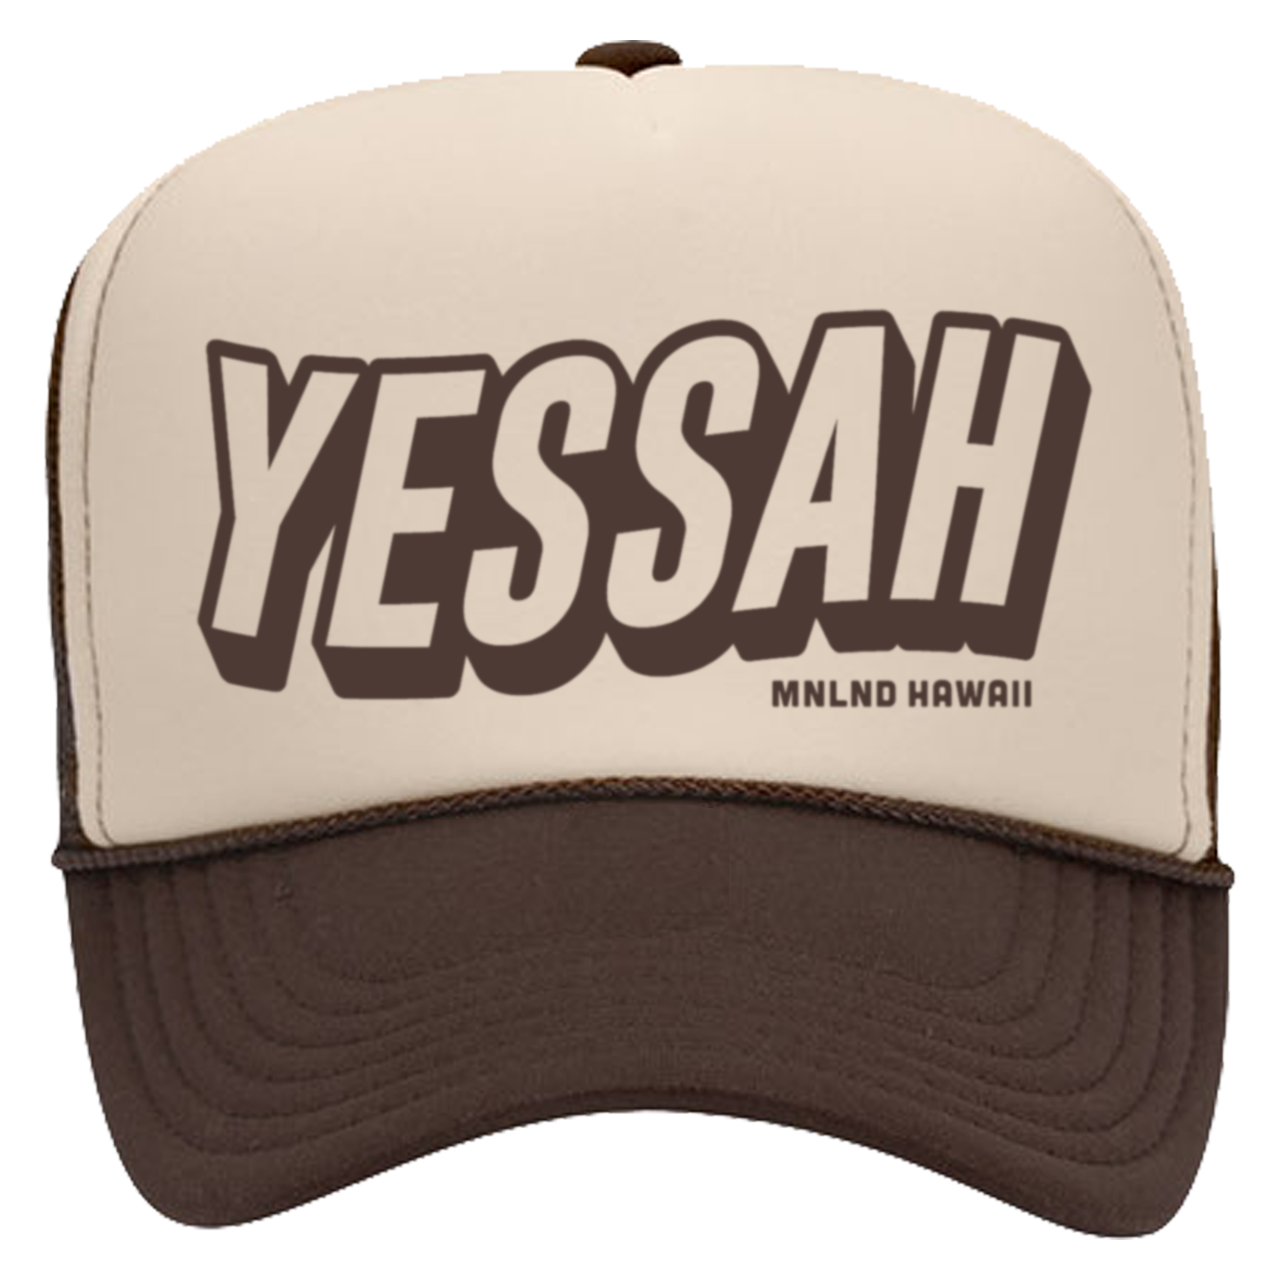 Yessah - Trucker Hat